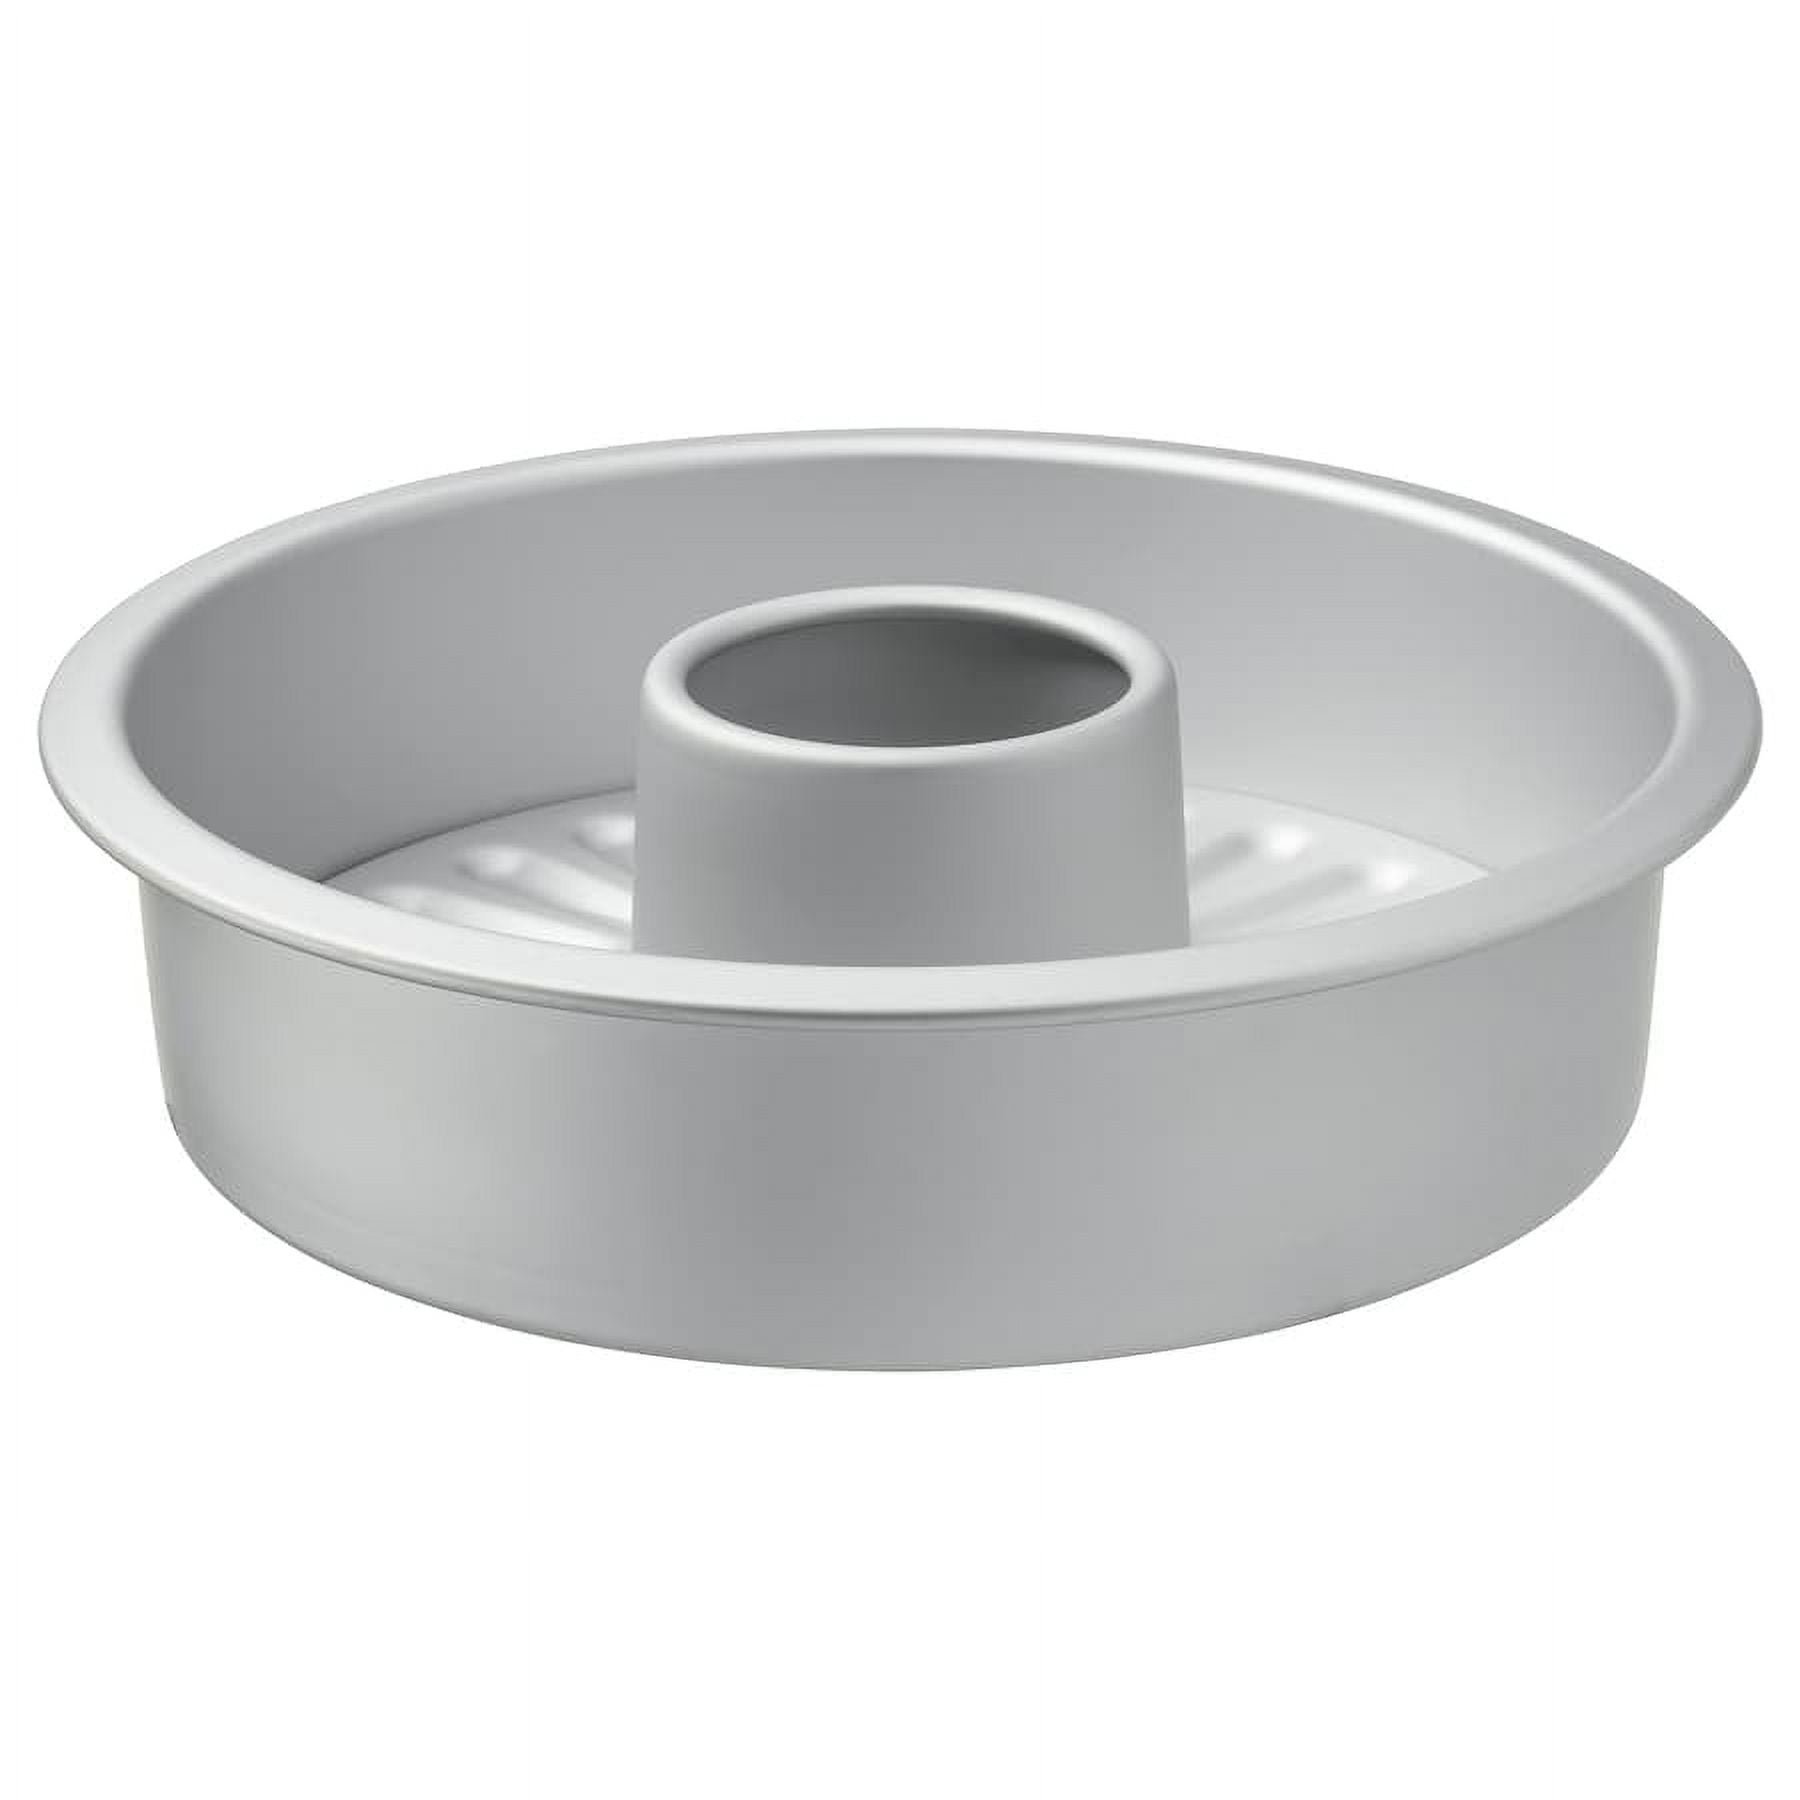 VARDAGEN Loose-base cake tin, silver-colour - IKEA